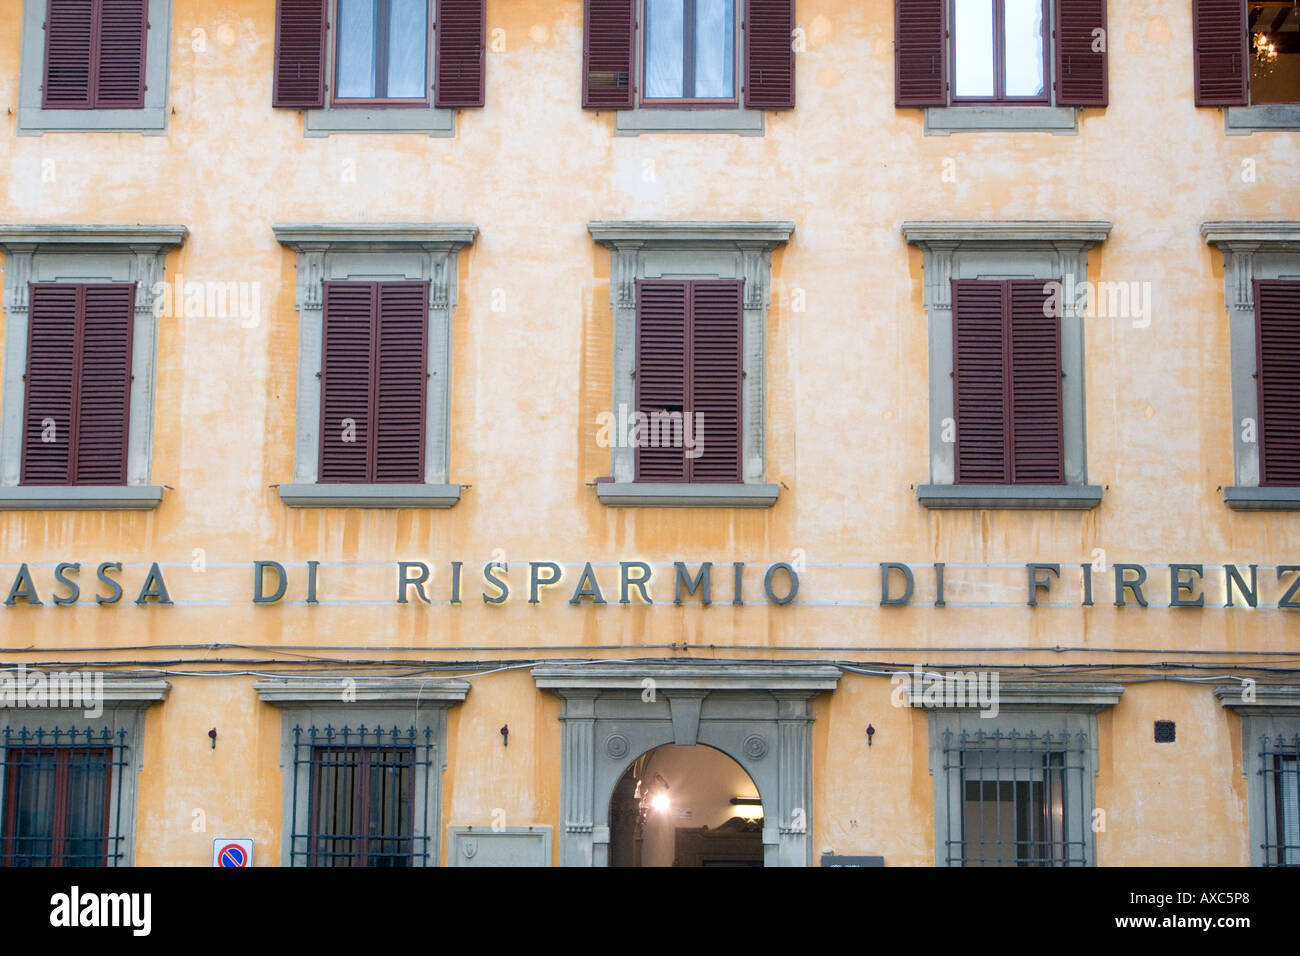 Cass di Risparmio di Firenze building Cortona Tuscany Italy Stock Photo -  Alamy